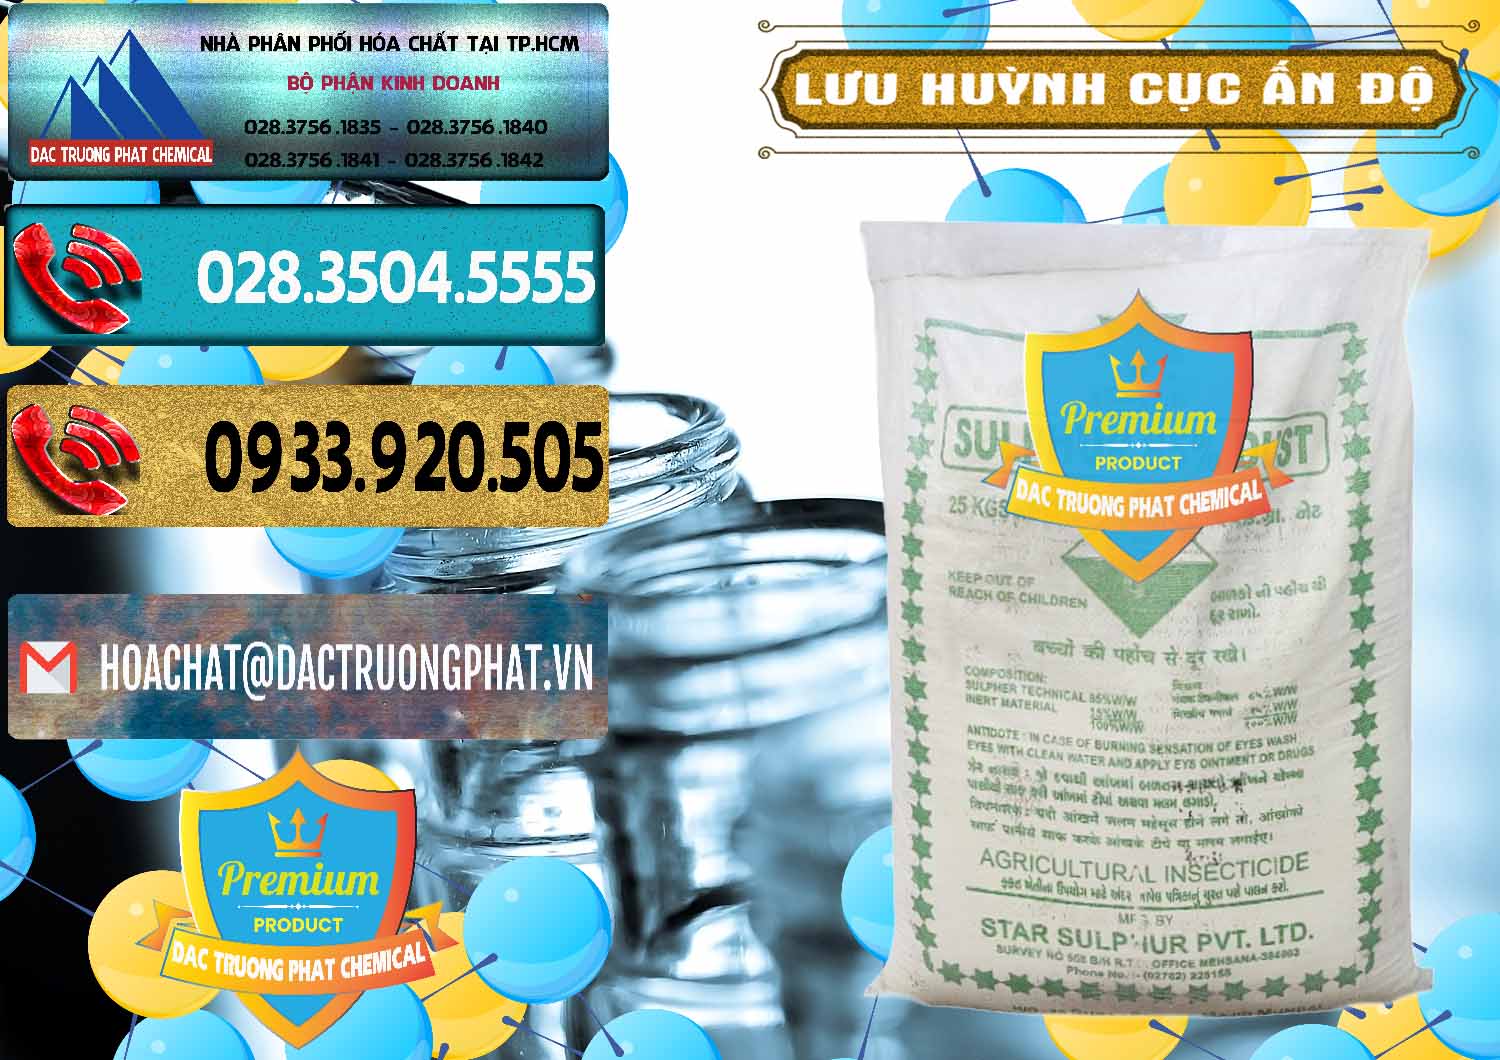 Nhà cung cấp và bán Lưu huỳnh Cục - Sulfur Ấn Độ India - 0348 - Bán & cung cấp hóa chất tại TP.HCM - hoachatdetnhuom.com